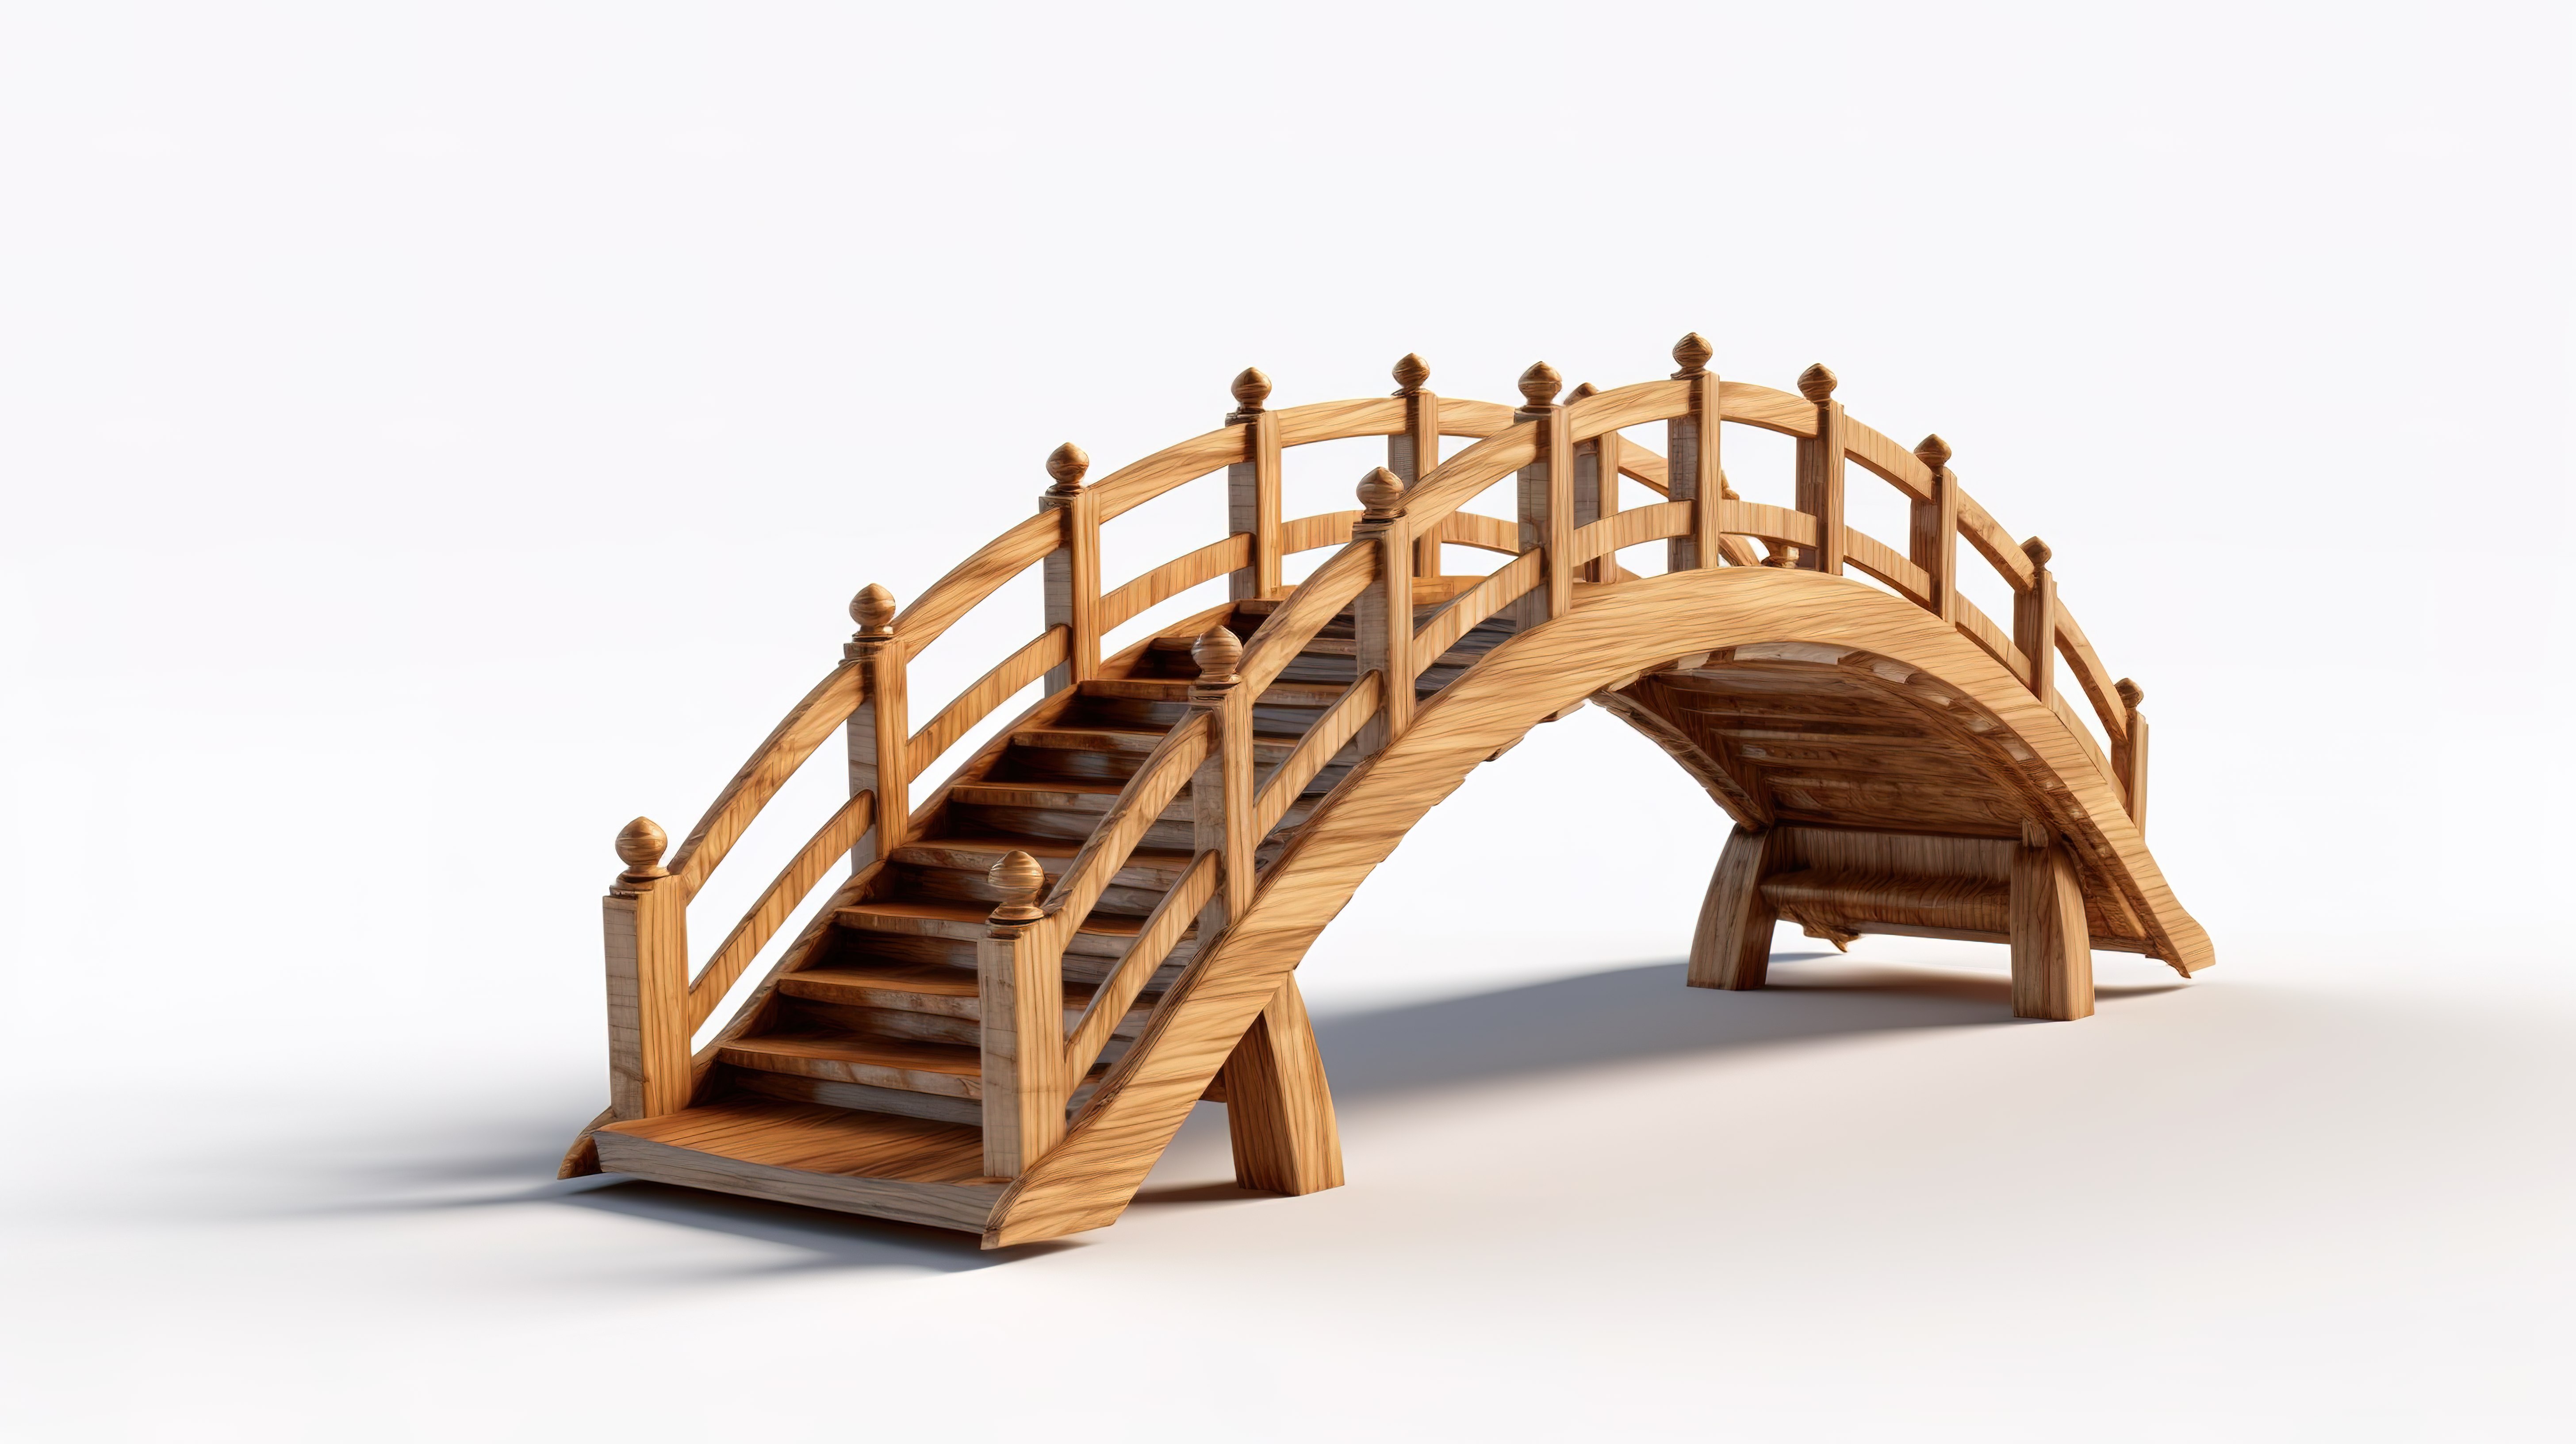 空白画布上木桥的详细 3D 描绘图片